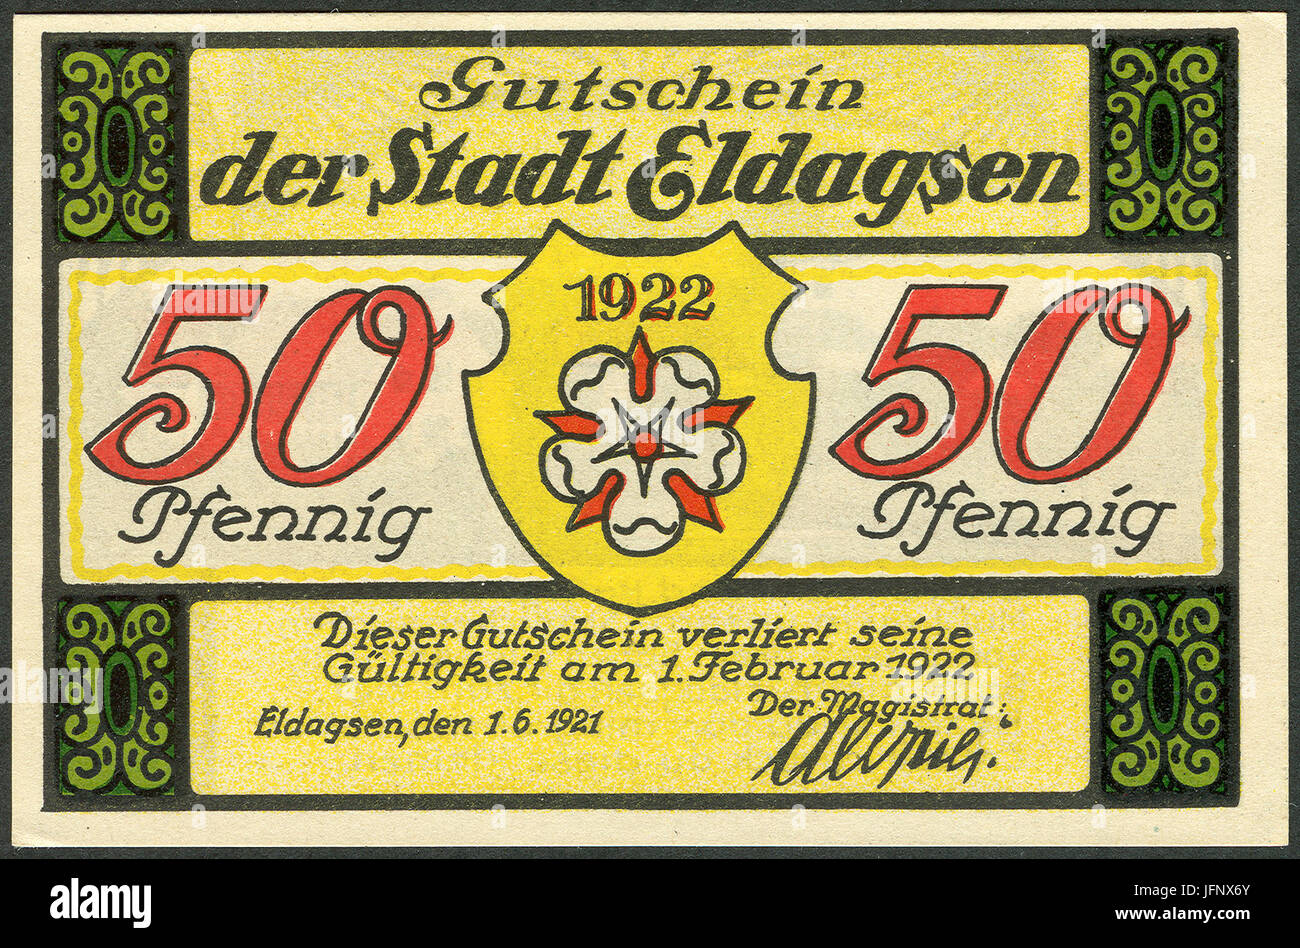 1921-06-01 Gutschein der Stadt Eldagsen, 0,50 Mark 50 Pfennig, gültig bis 1. Februar 19 , a, faksimilierte Unterschrift der Magistrat. Stock Photo